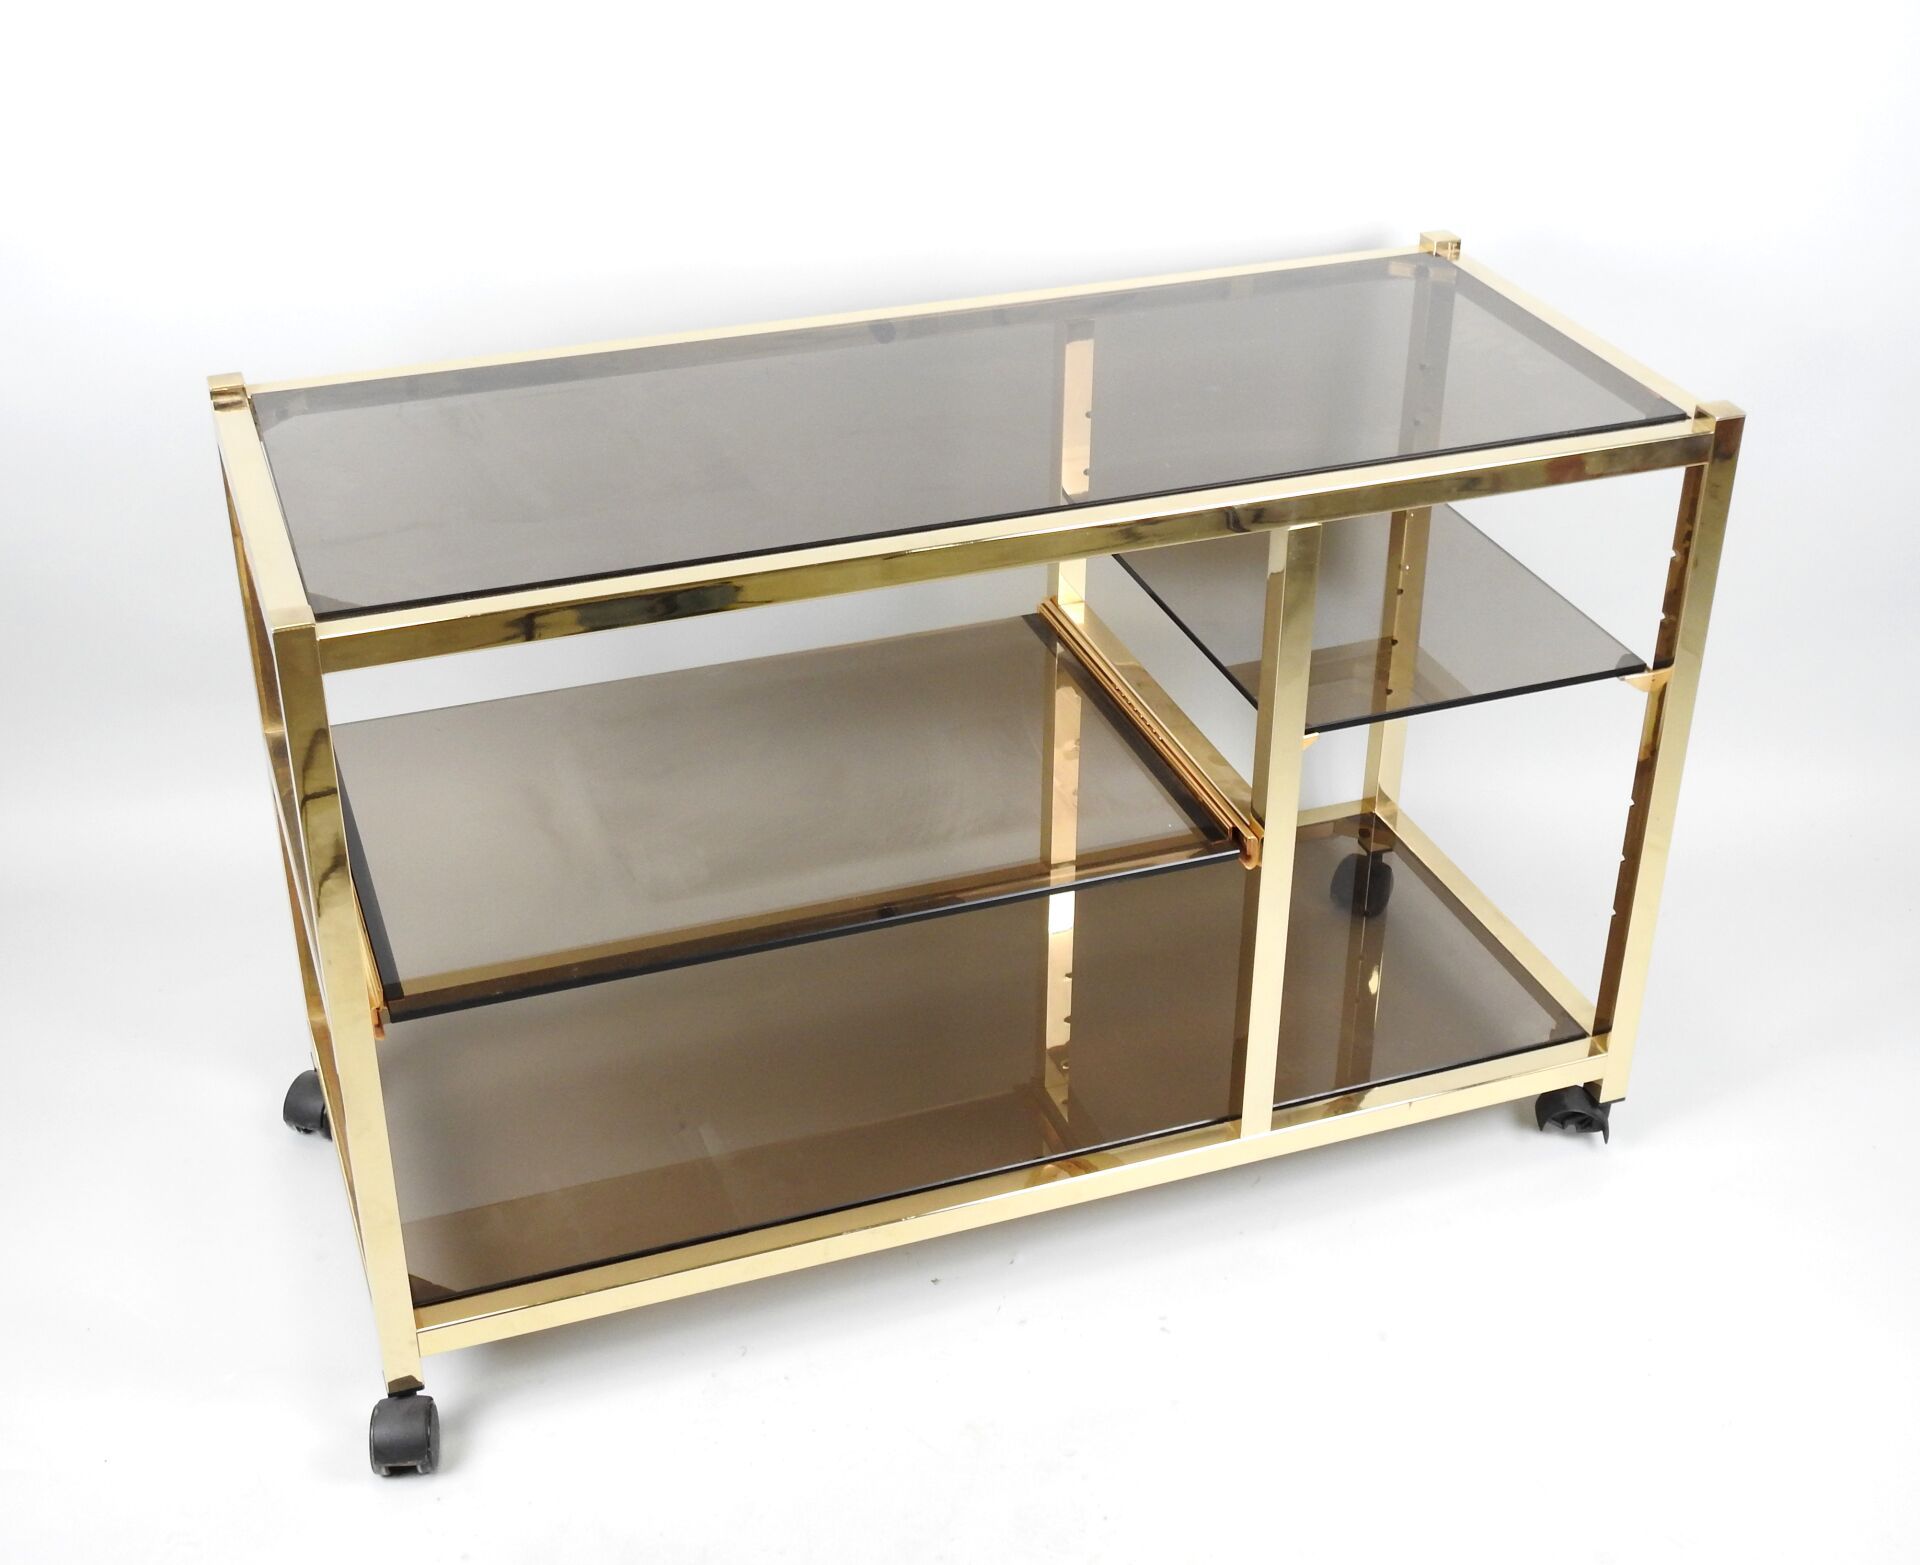 Null 长方形镀金金属边柜，带烟熏玻璃面板，一个玻璃面板形成一个抽屉。
70 年代制造。
68 x 99 x 41.5 厘米。
(磨损）。